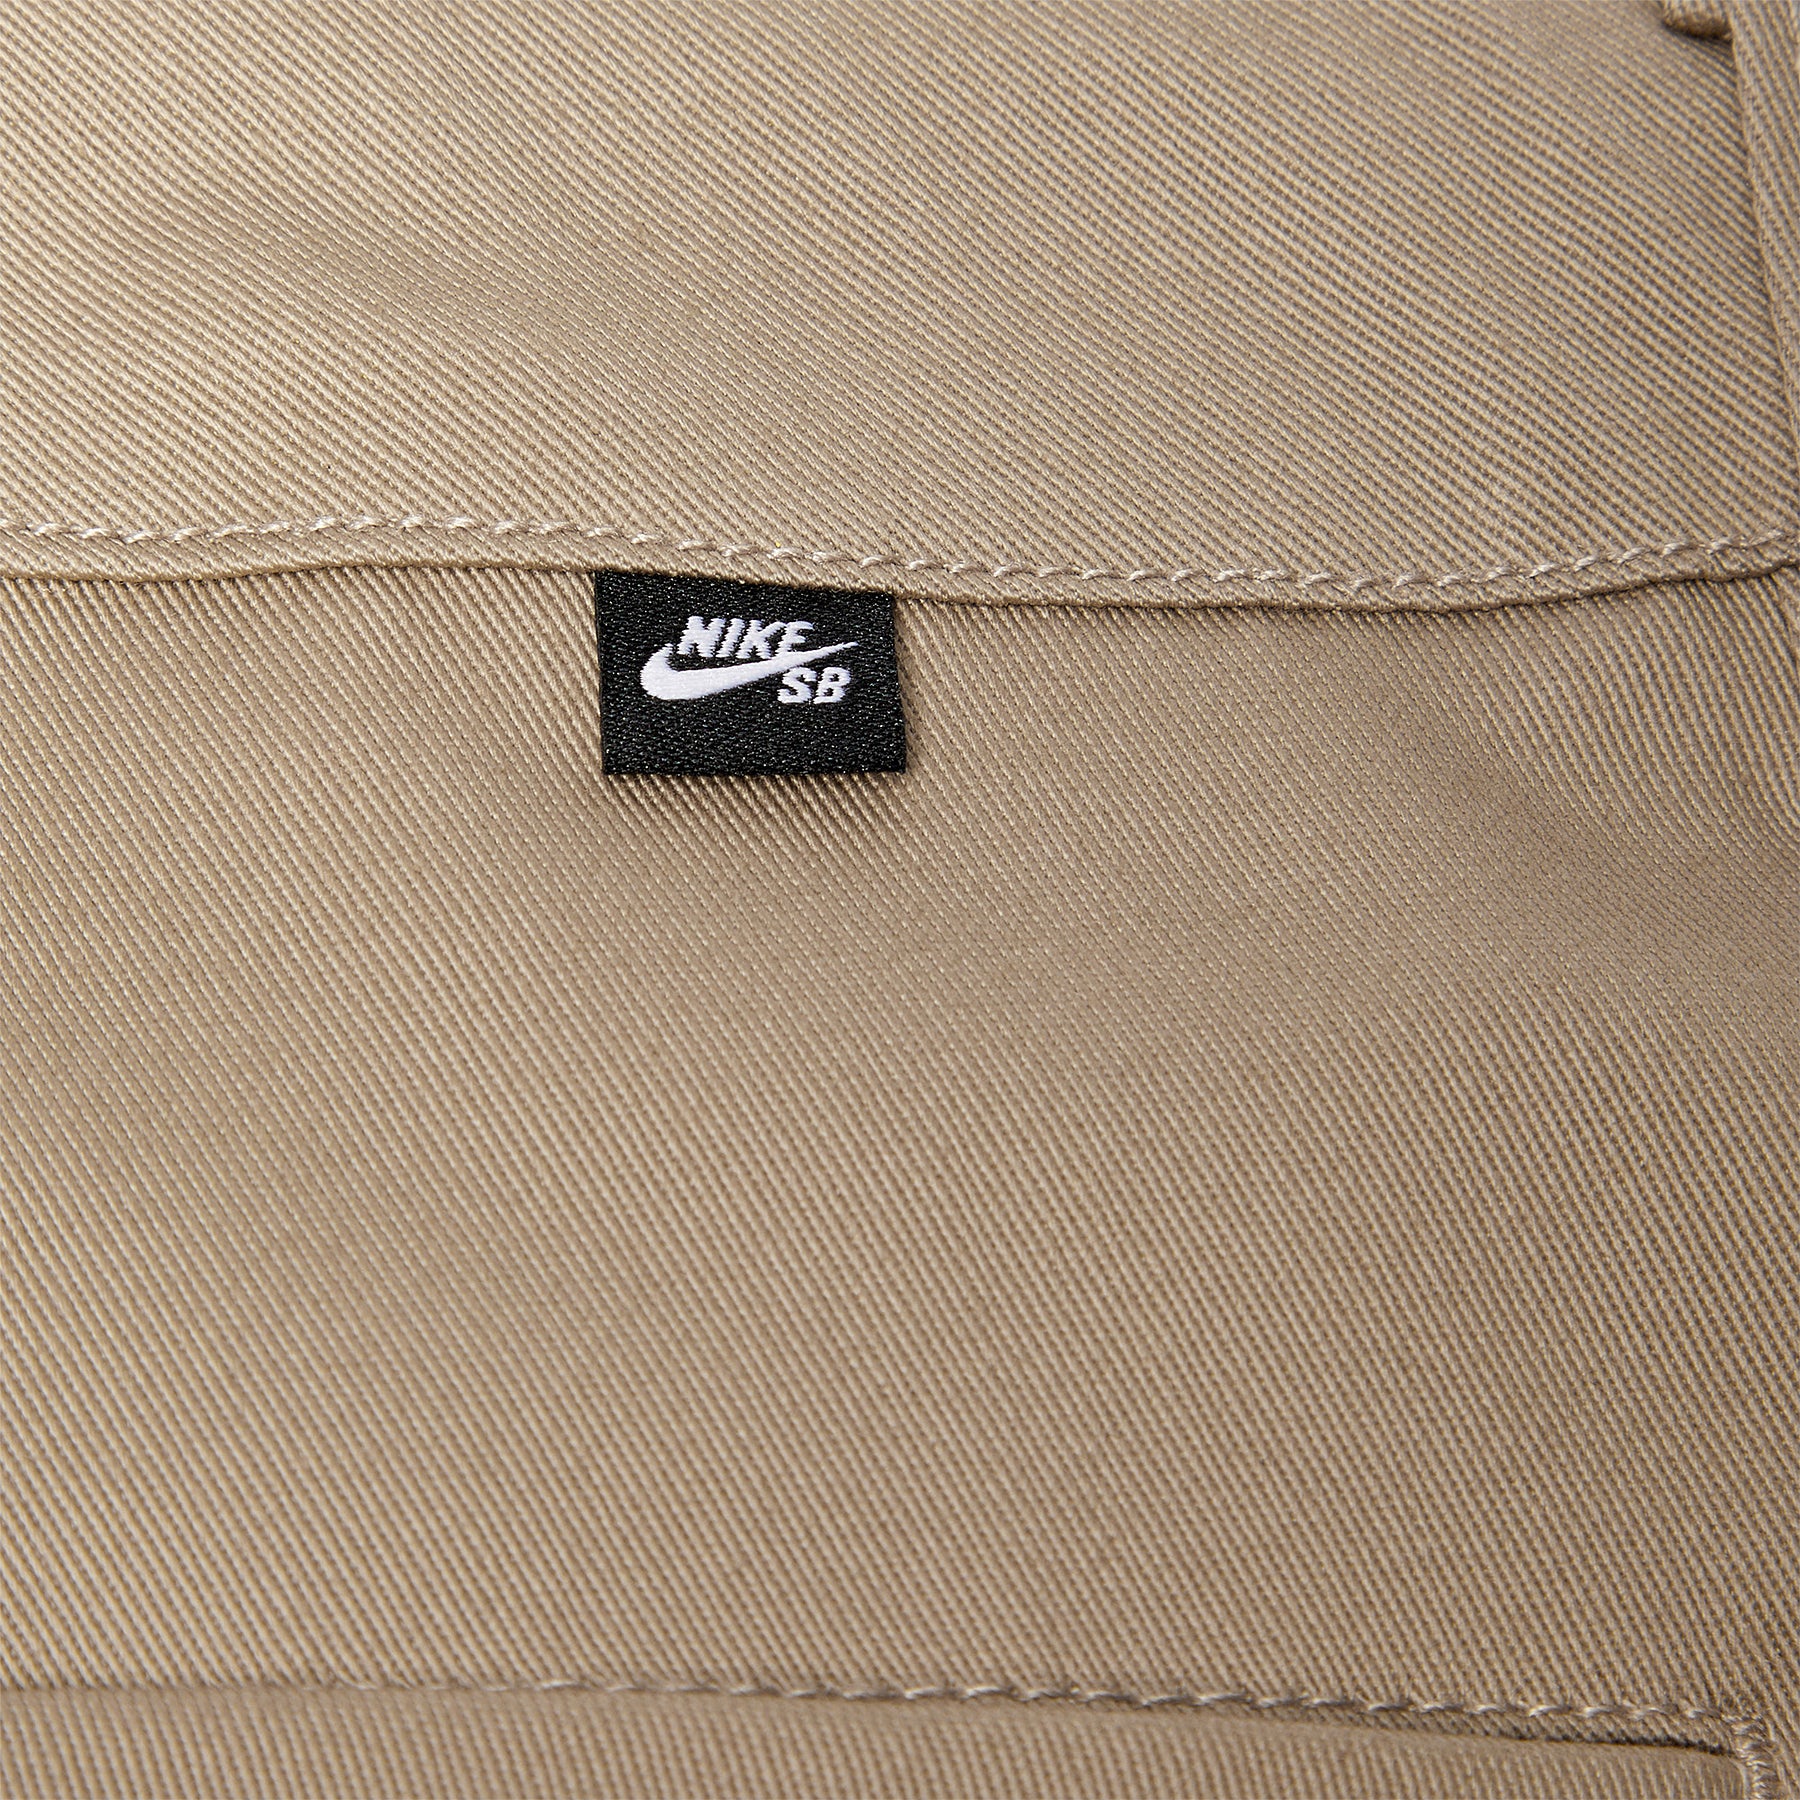 Nike SB Chino Skate Shorts (Khaki)